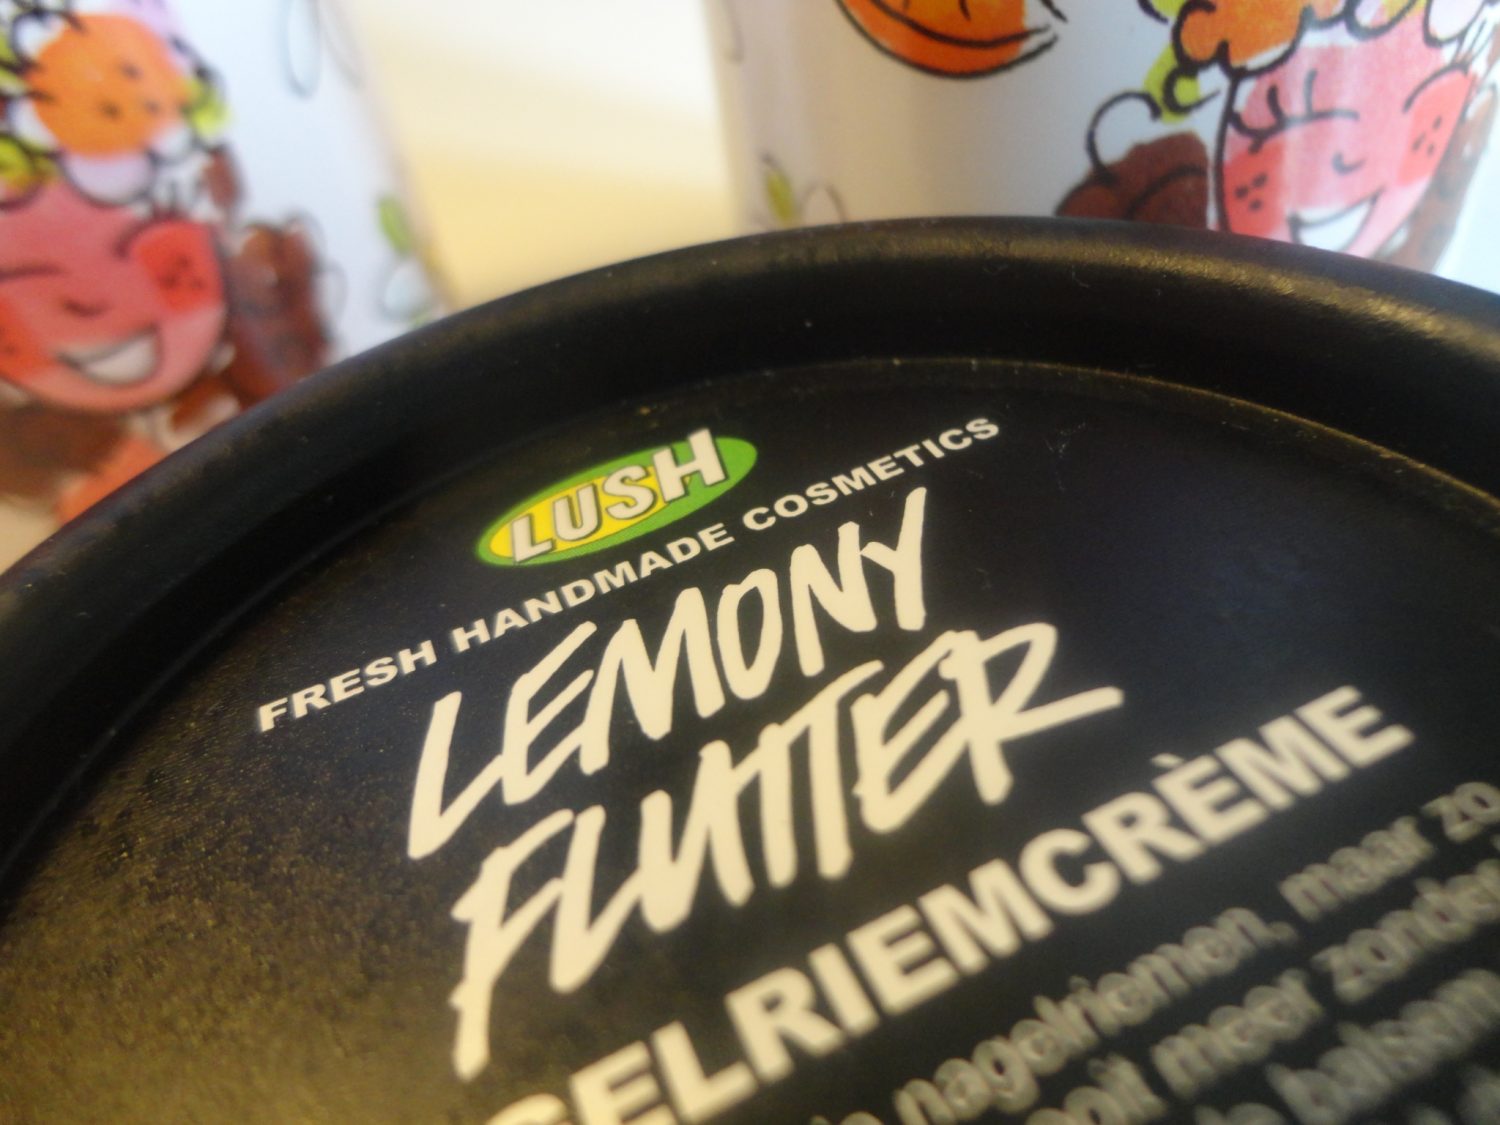 Lush Lemony Flutter